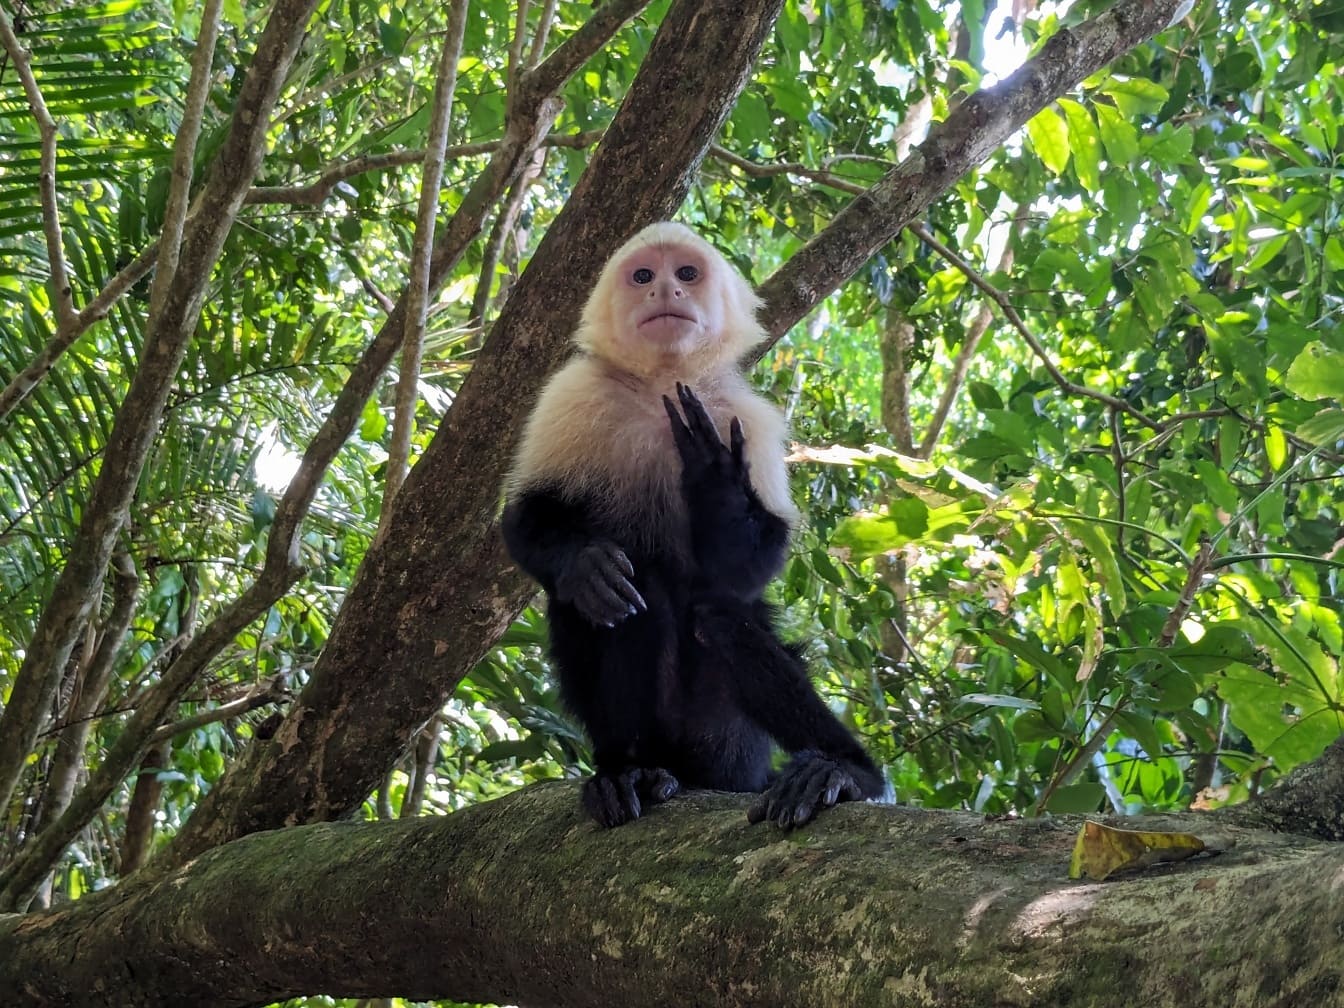 Macaco-prego panamenho de cara branca (Cebus imitator) macaco sentado em um galho de árvore